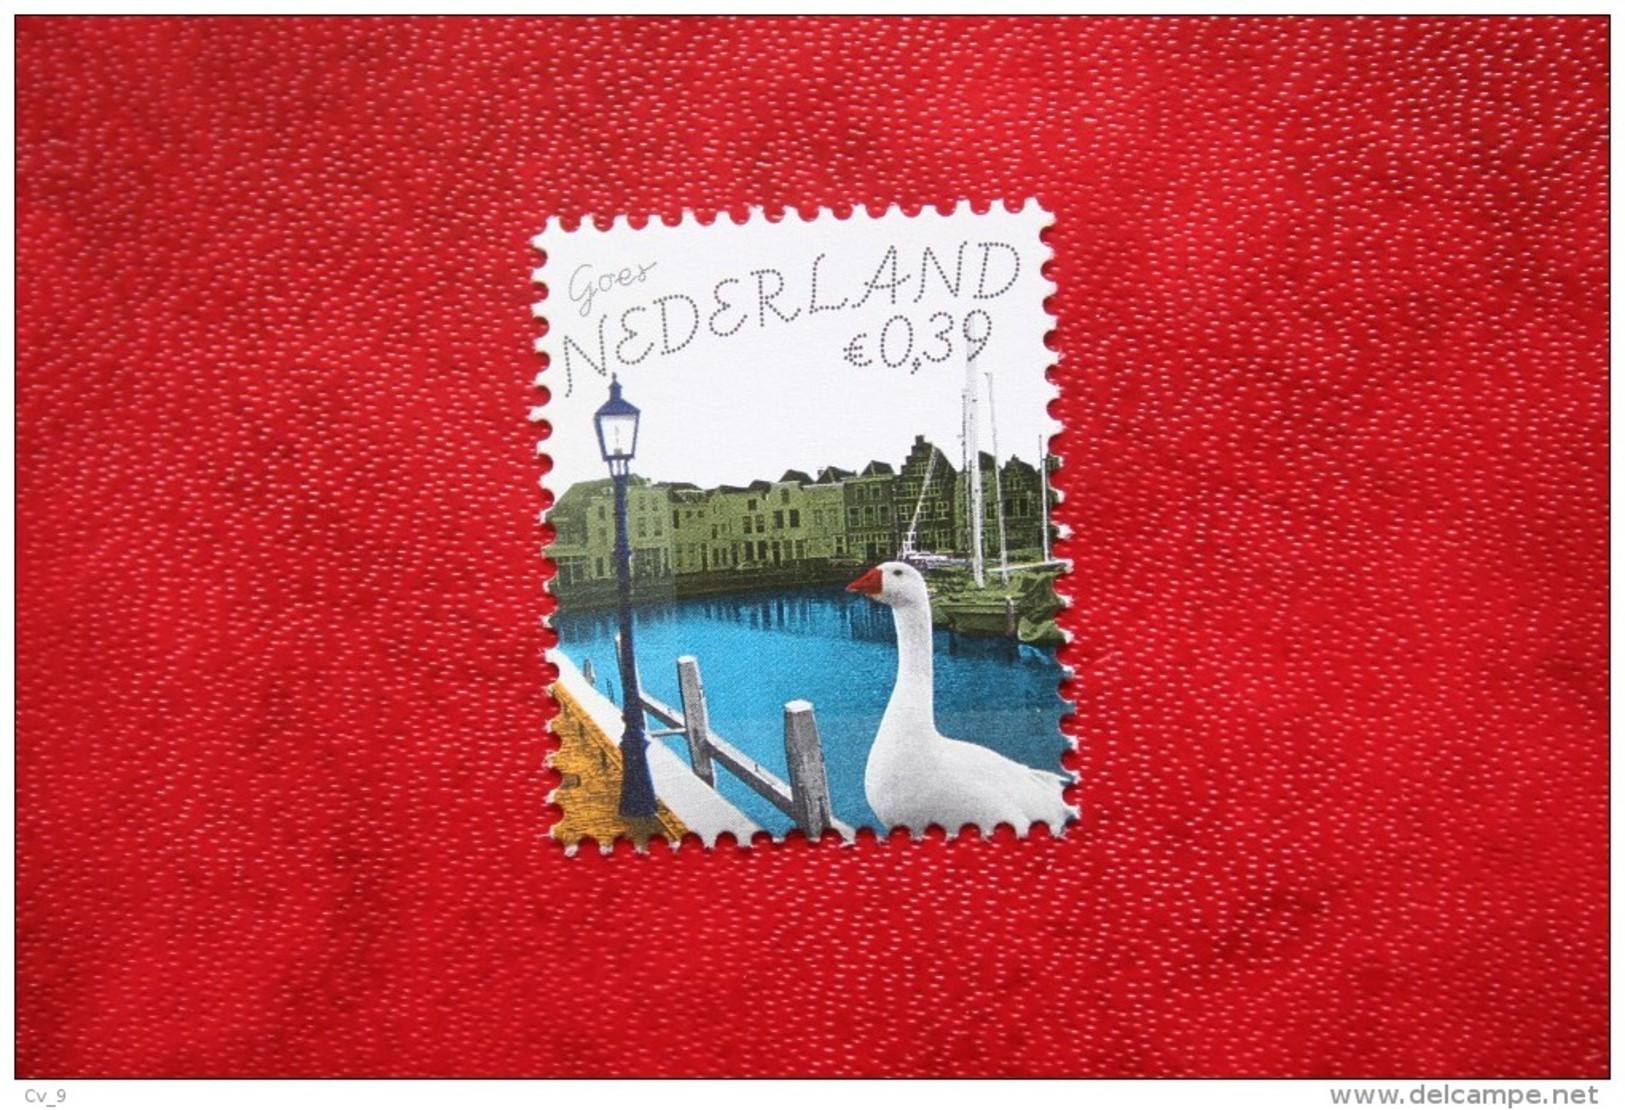 Mooi Nederland Goes NVPH 2345 (Mi 2318) 2005 POSTFRIS / MNH ** NEDERLAND / NIEDERLANDE / NETHERLANDS - Unused Stamps